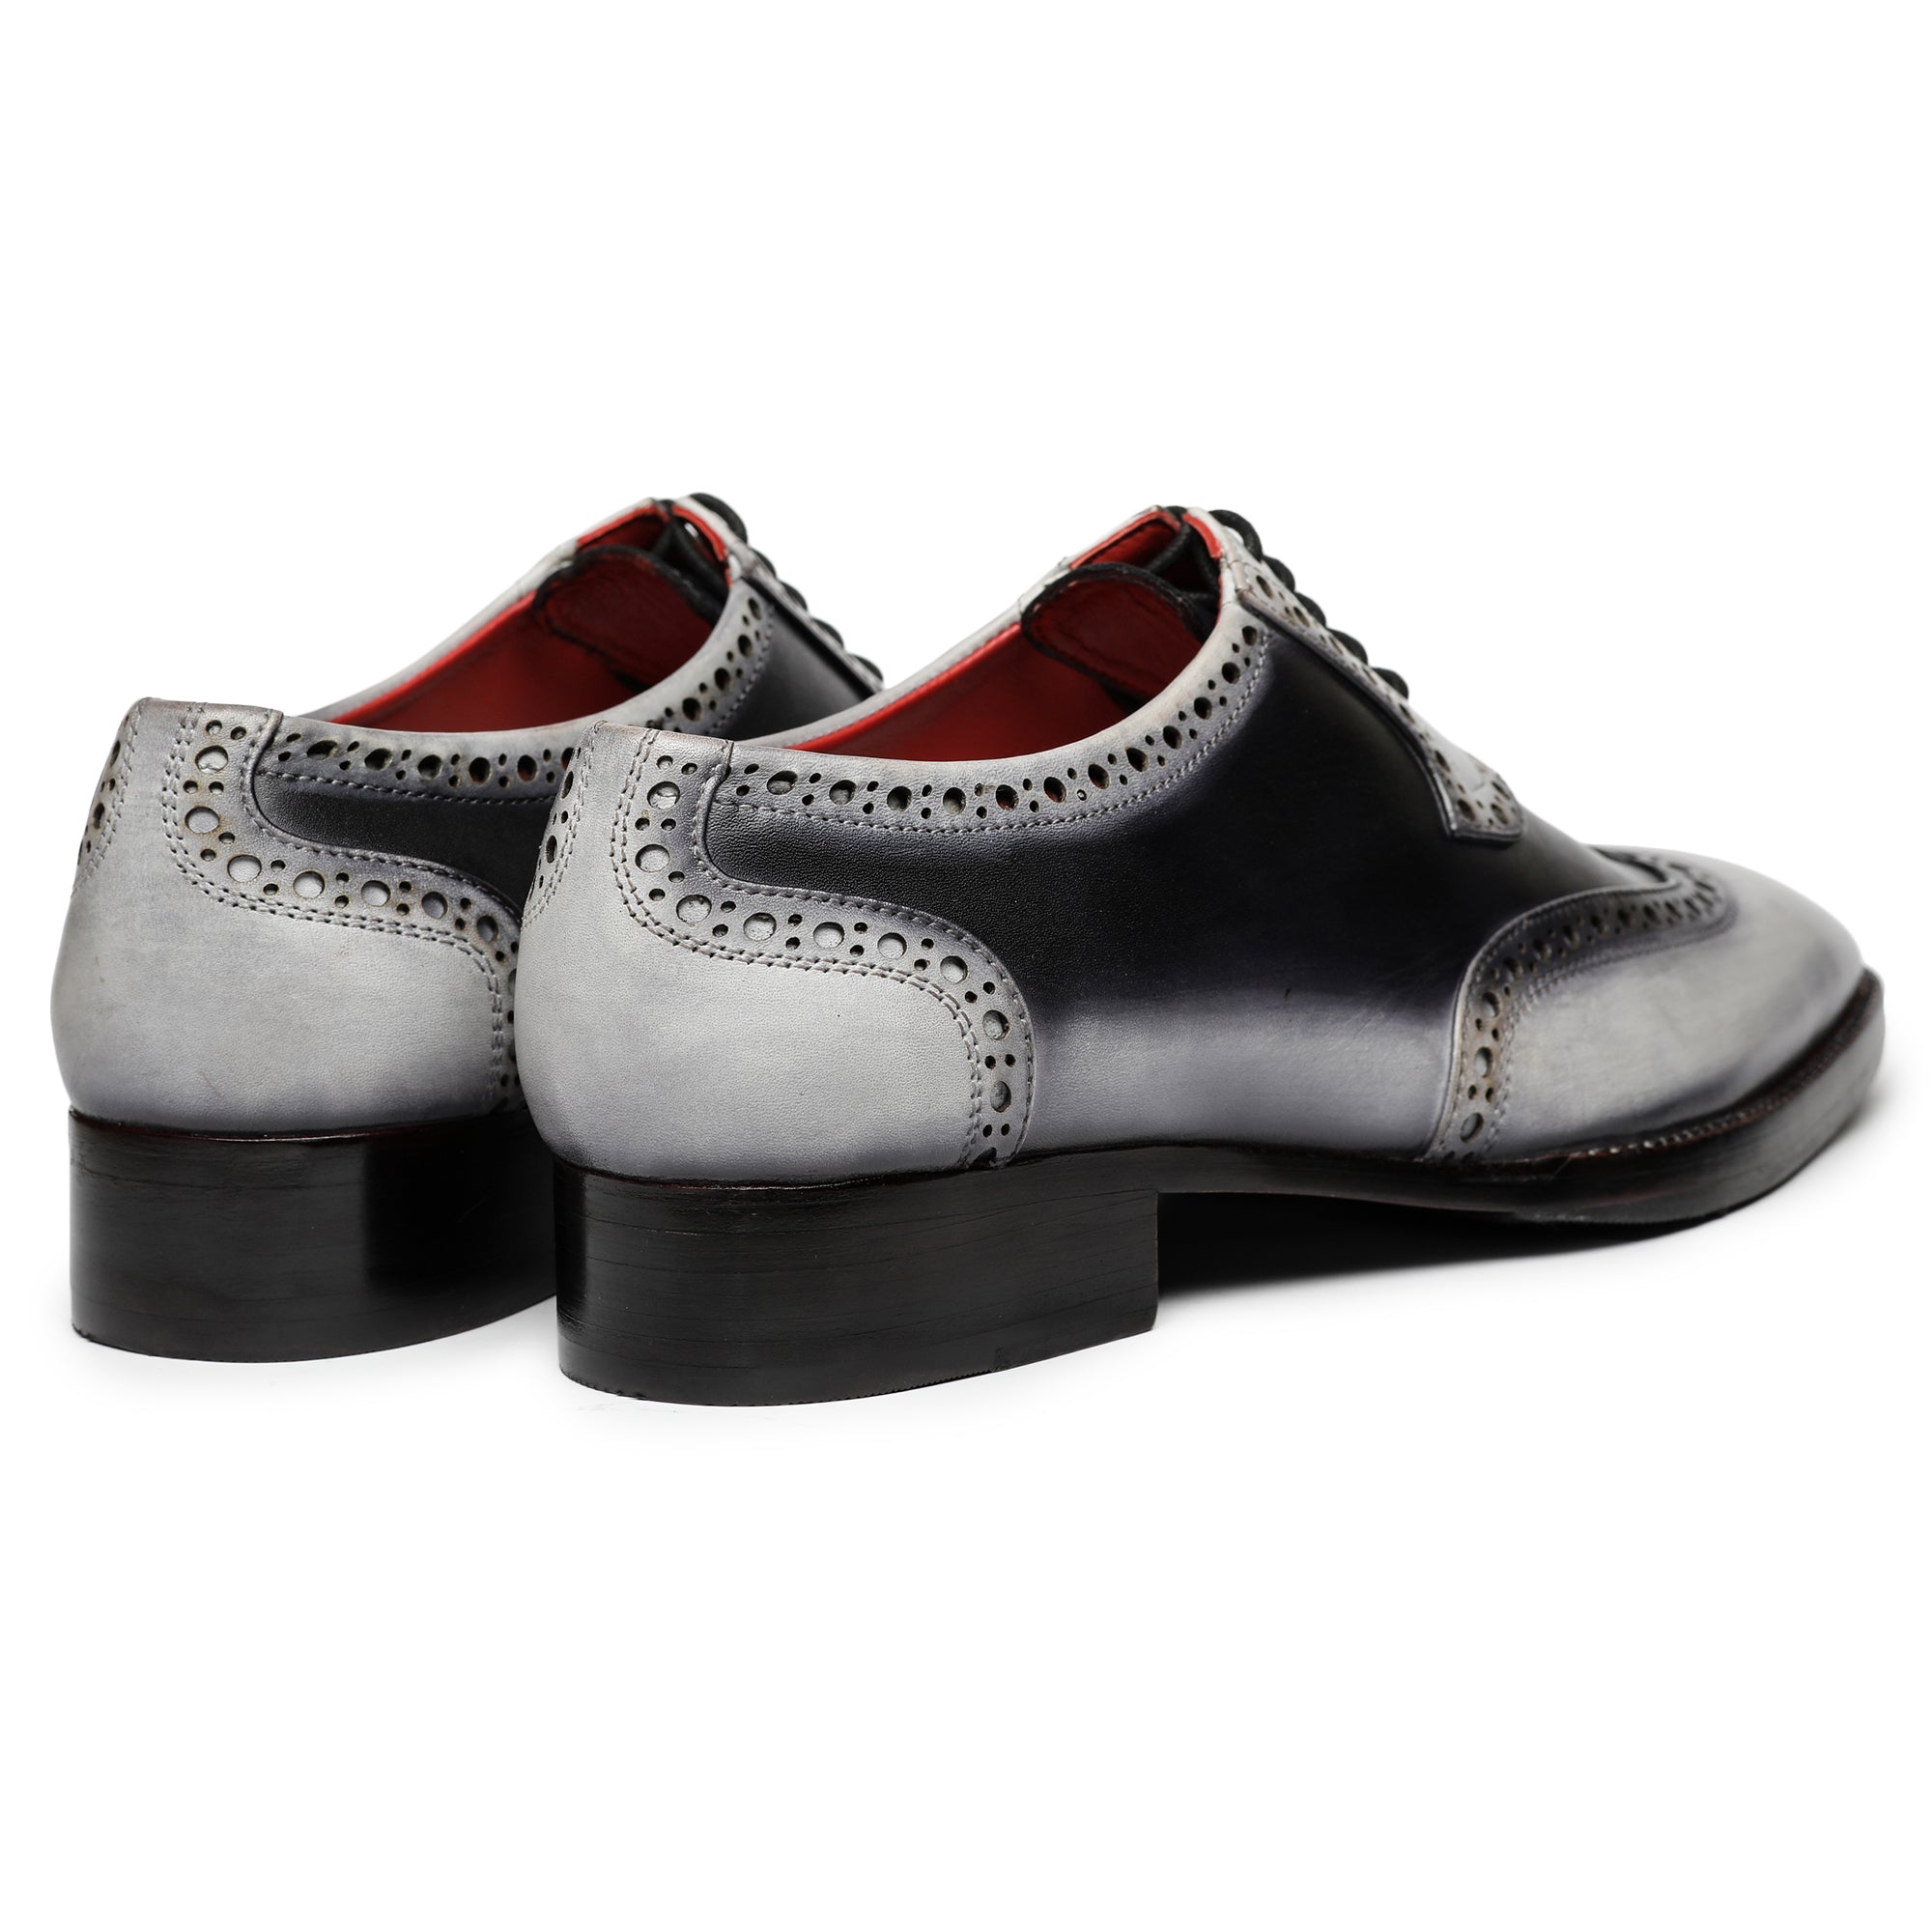 Wingtip Brogue Oxford- Grey & Black, Wingtip Shoes